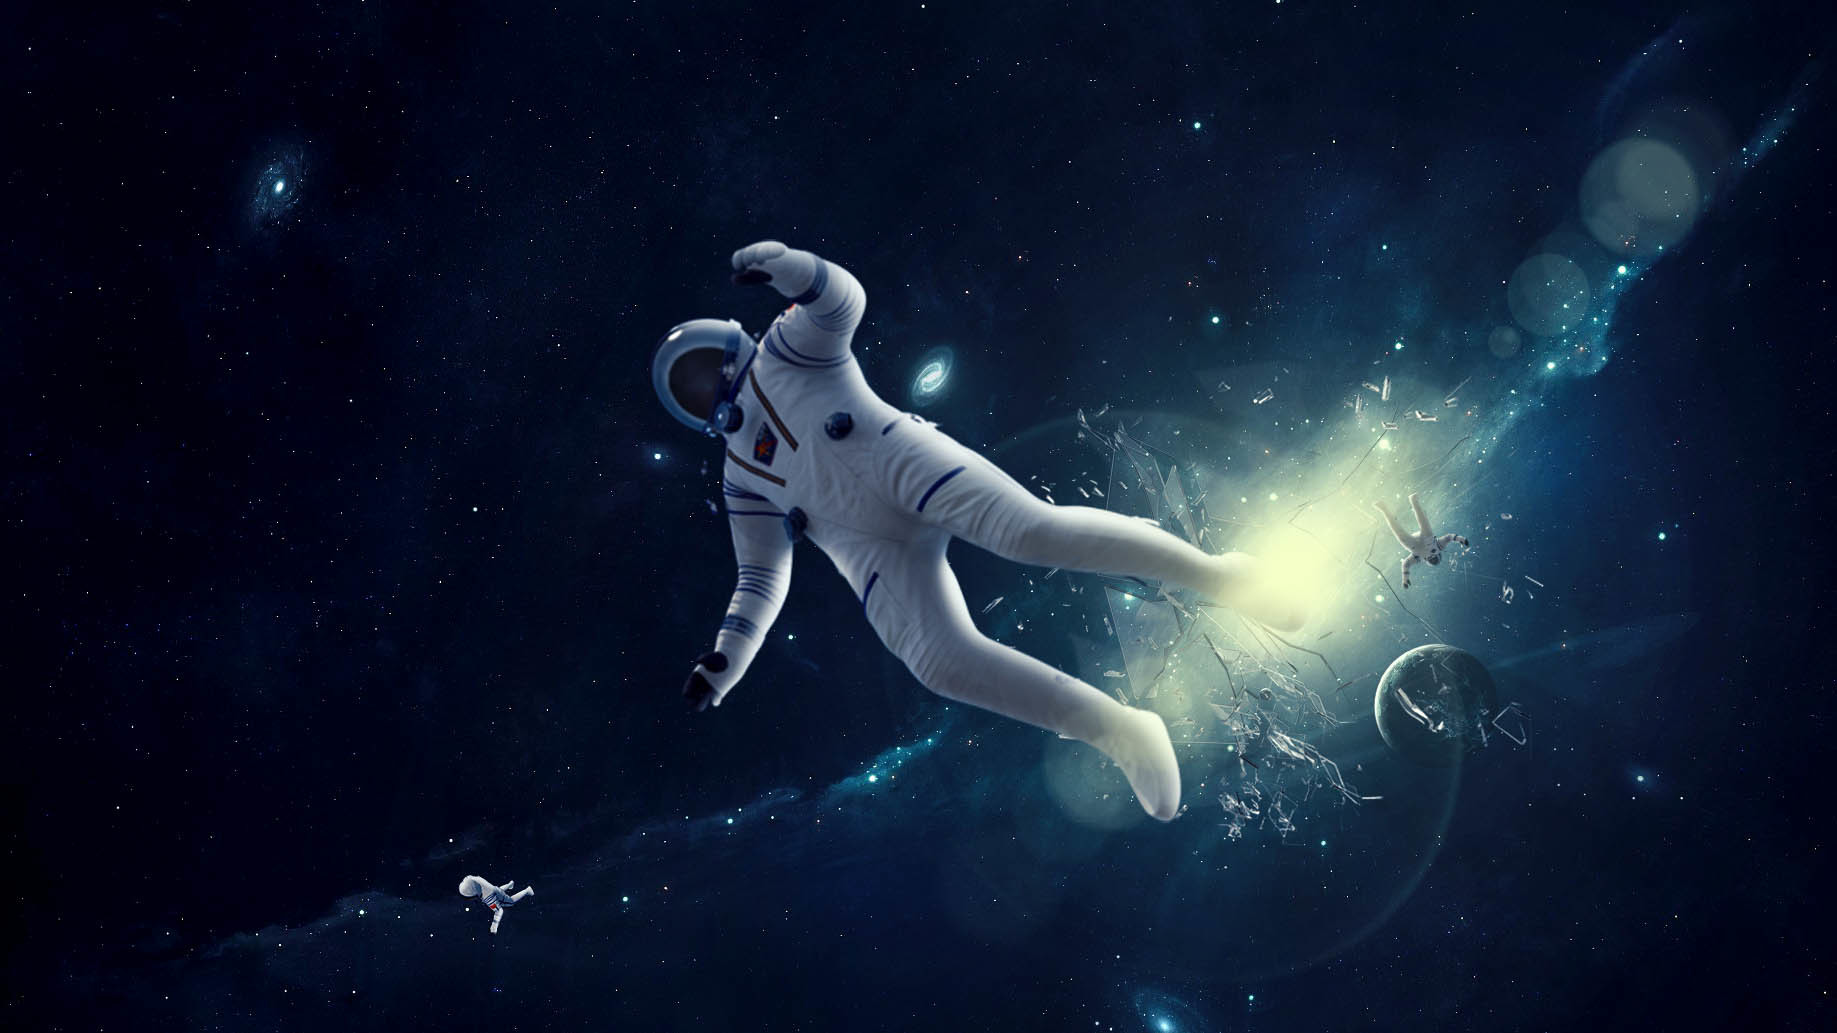 Звёздное небо и космос в картинках - Страница 15 Cris-trips-astronauta-space2